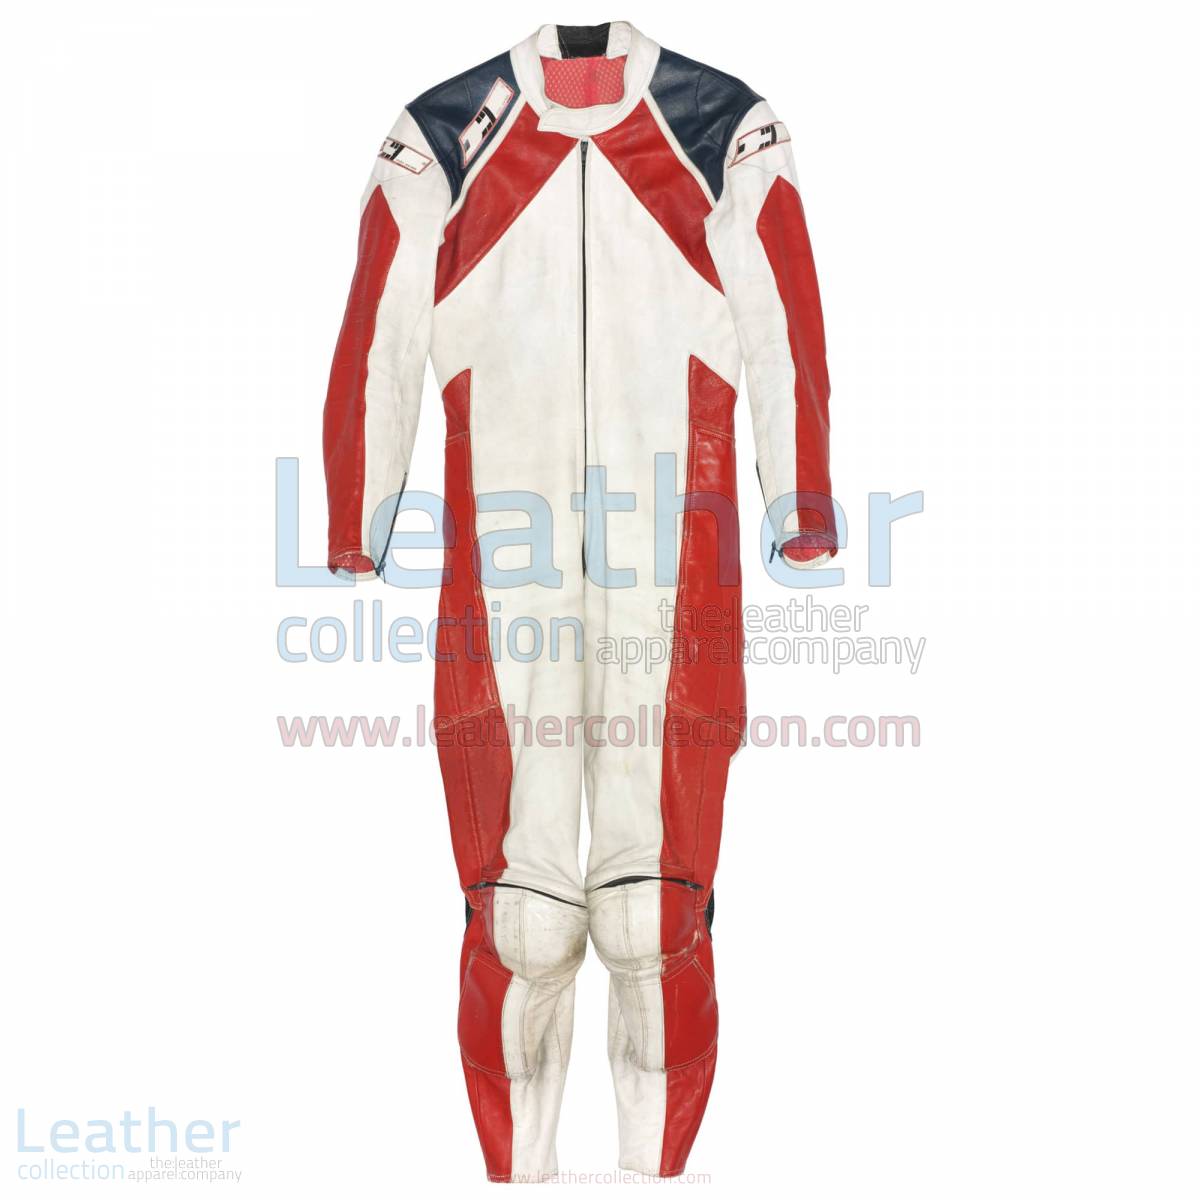 Mario Lega Ducati 1979 Racing Suit